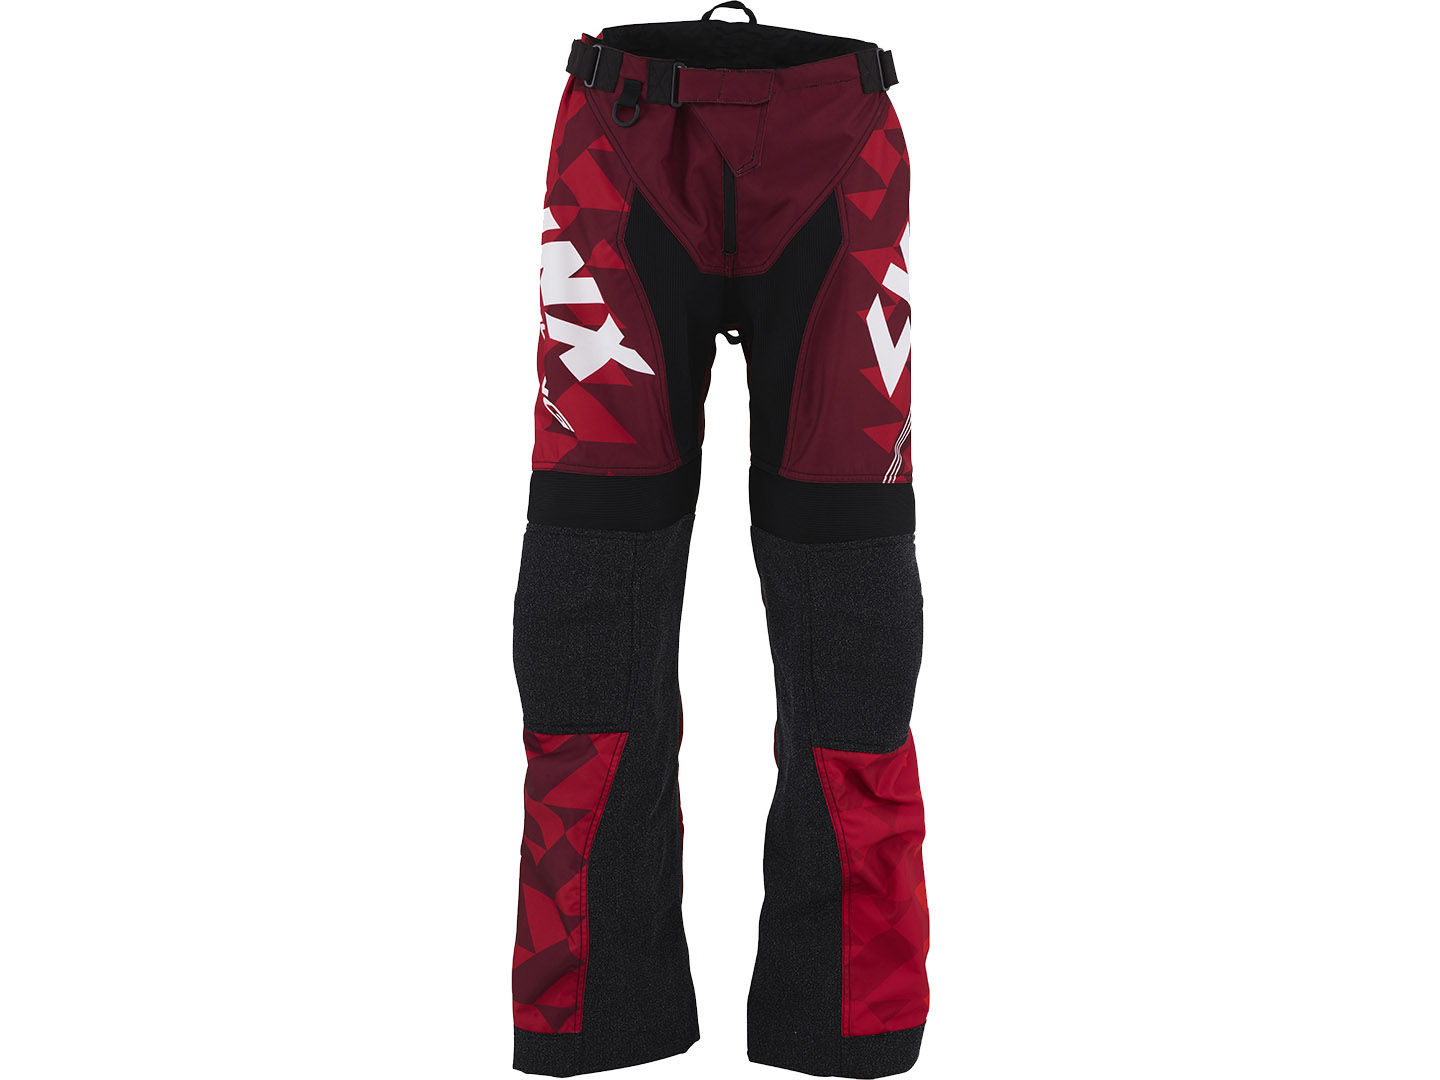 Lynx Race Snowcross-bukser i svart og rødt